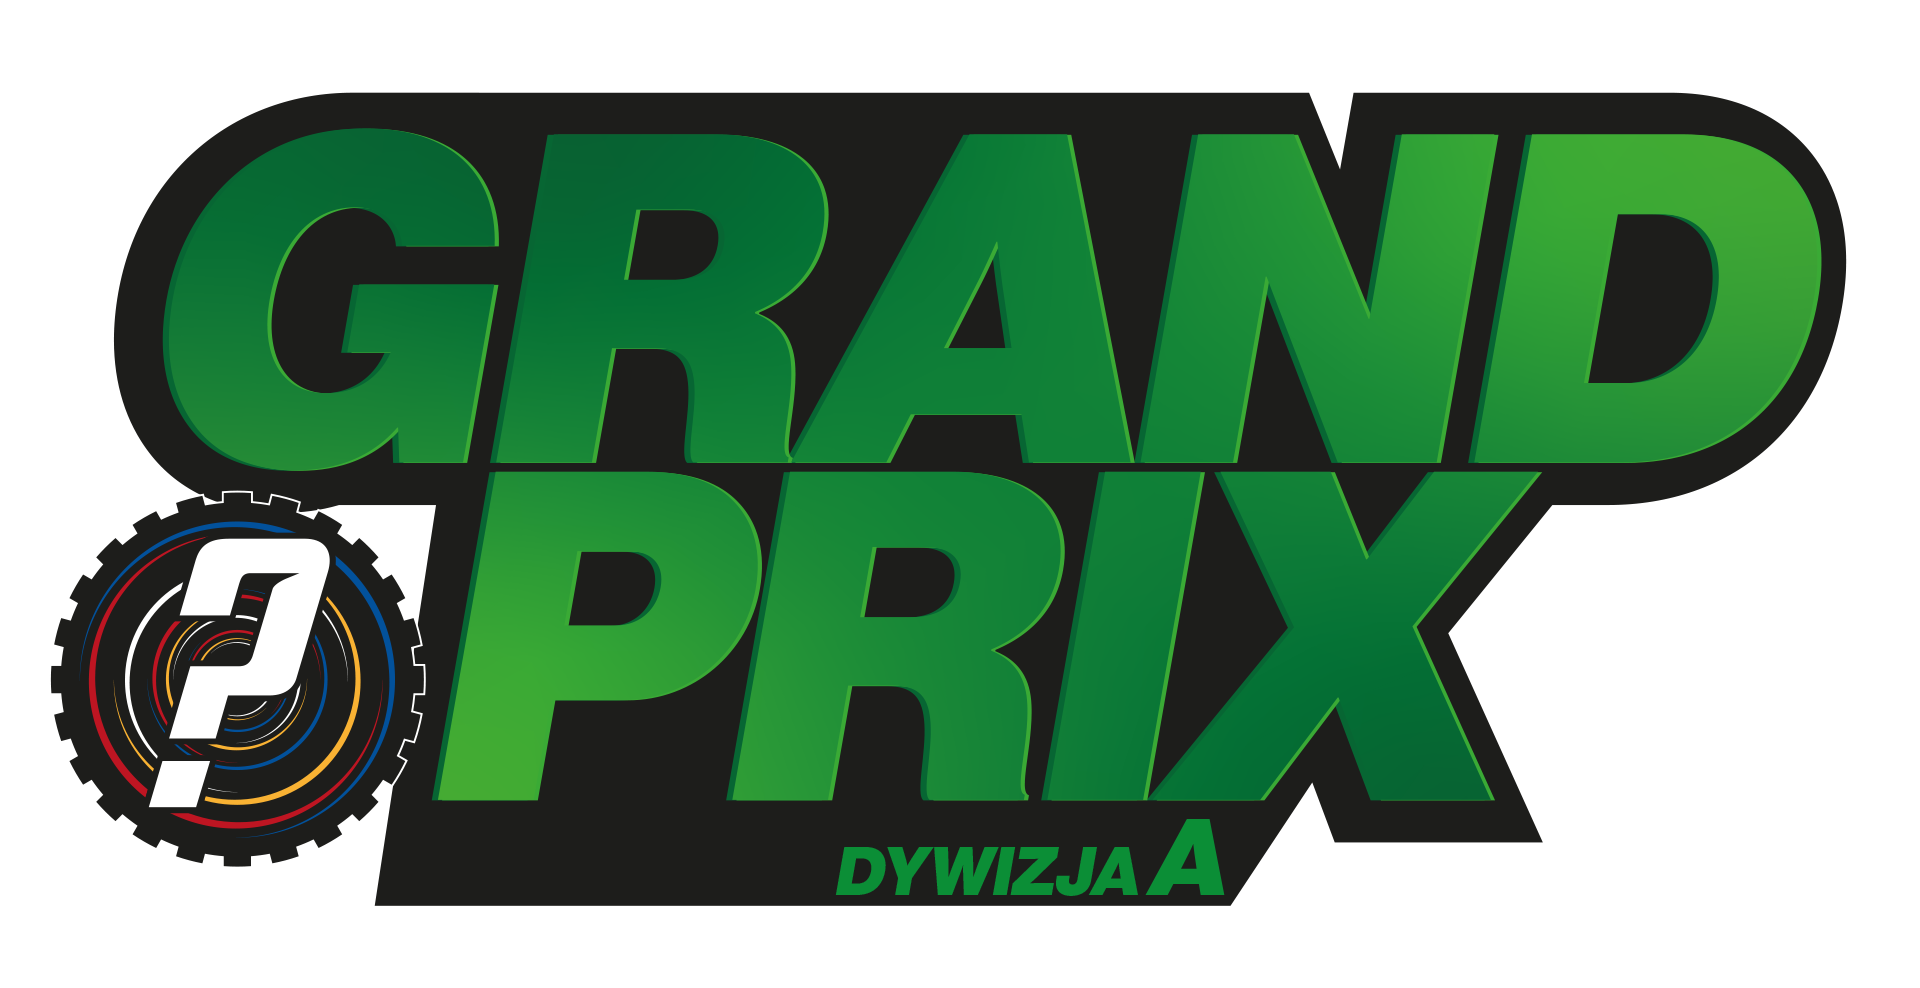 Daniel wygrywa inaugurację Grand Prix!